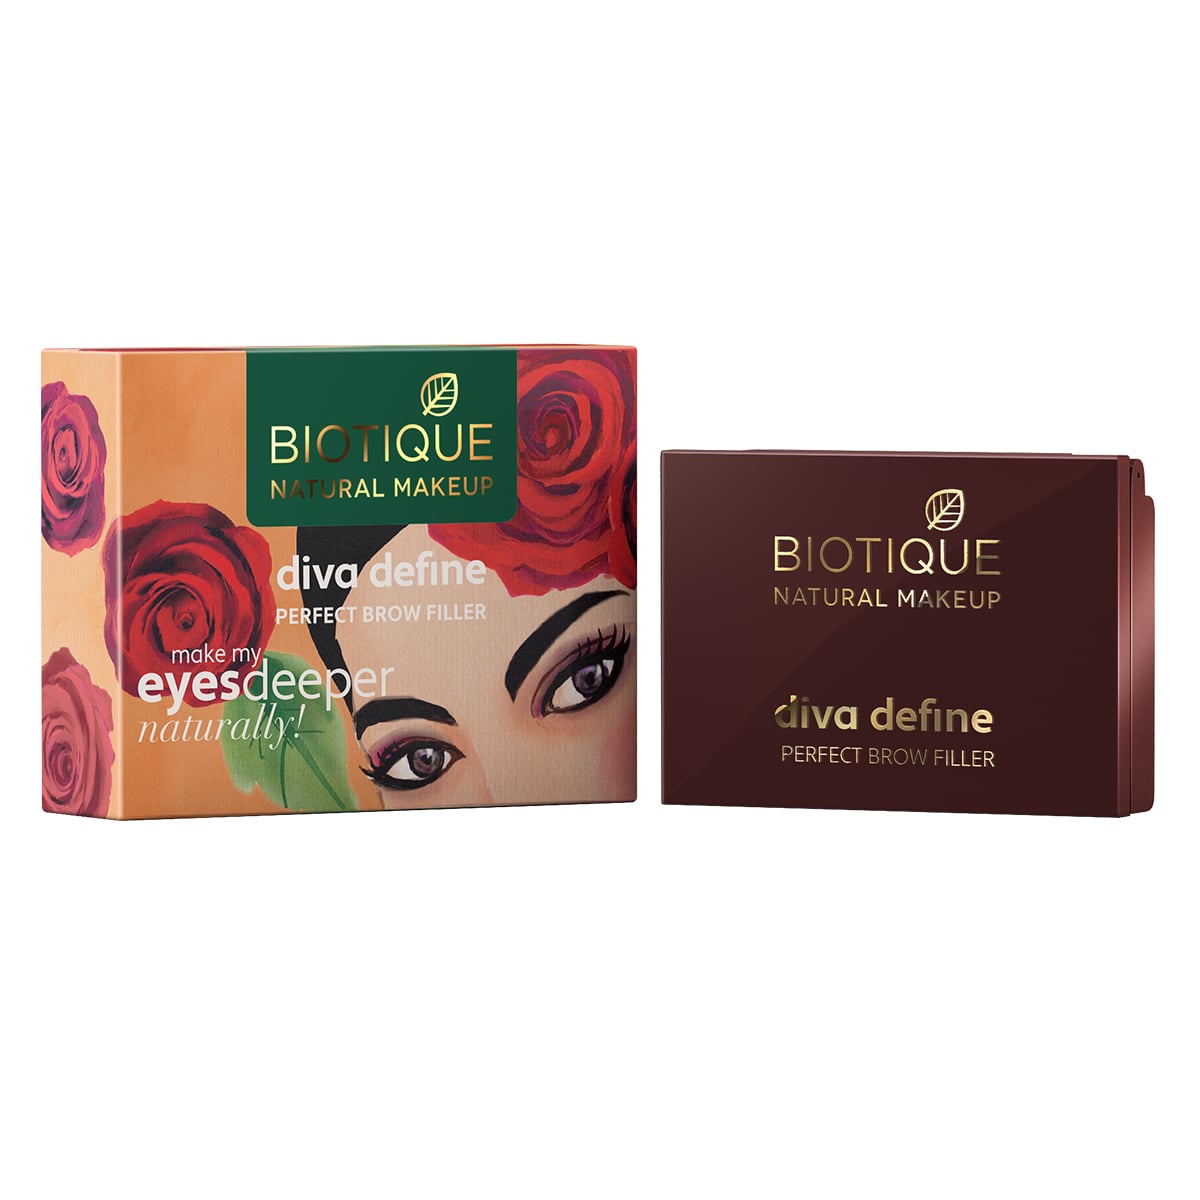 Biotique Natural Makeup Diva Define Perfect Brow Filler, Mocha Espresso, 3g